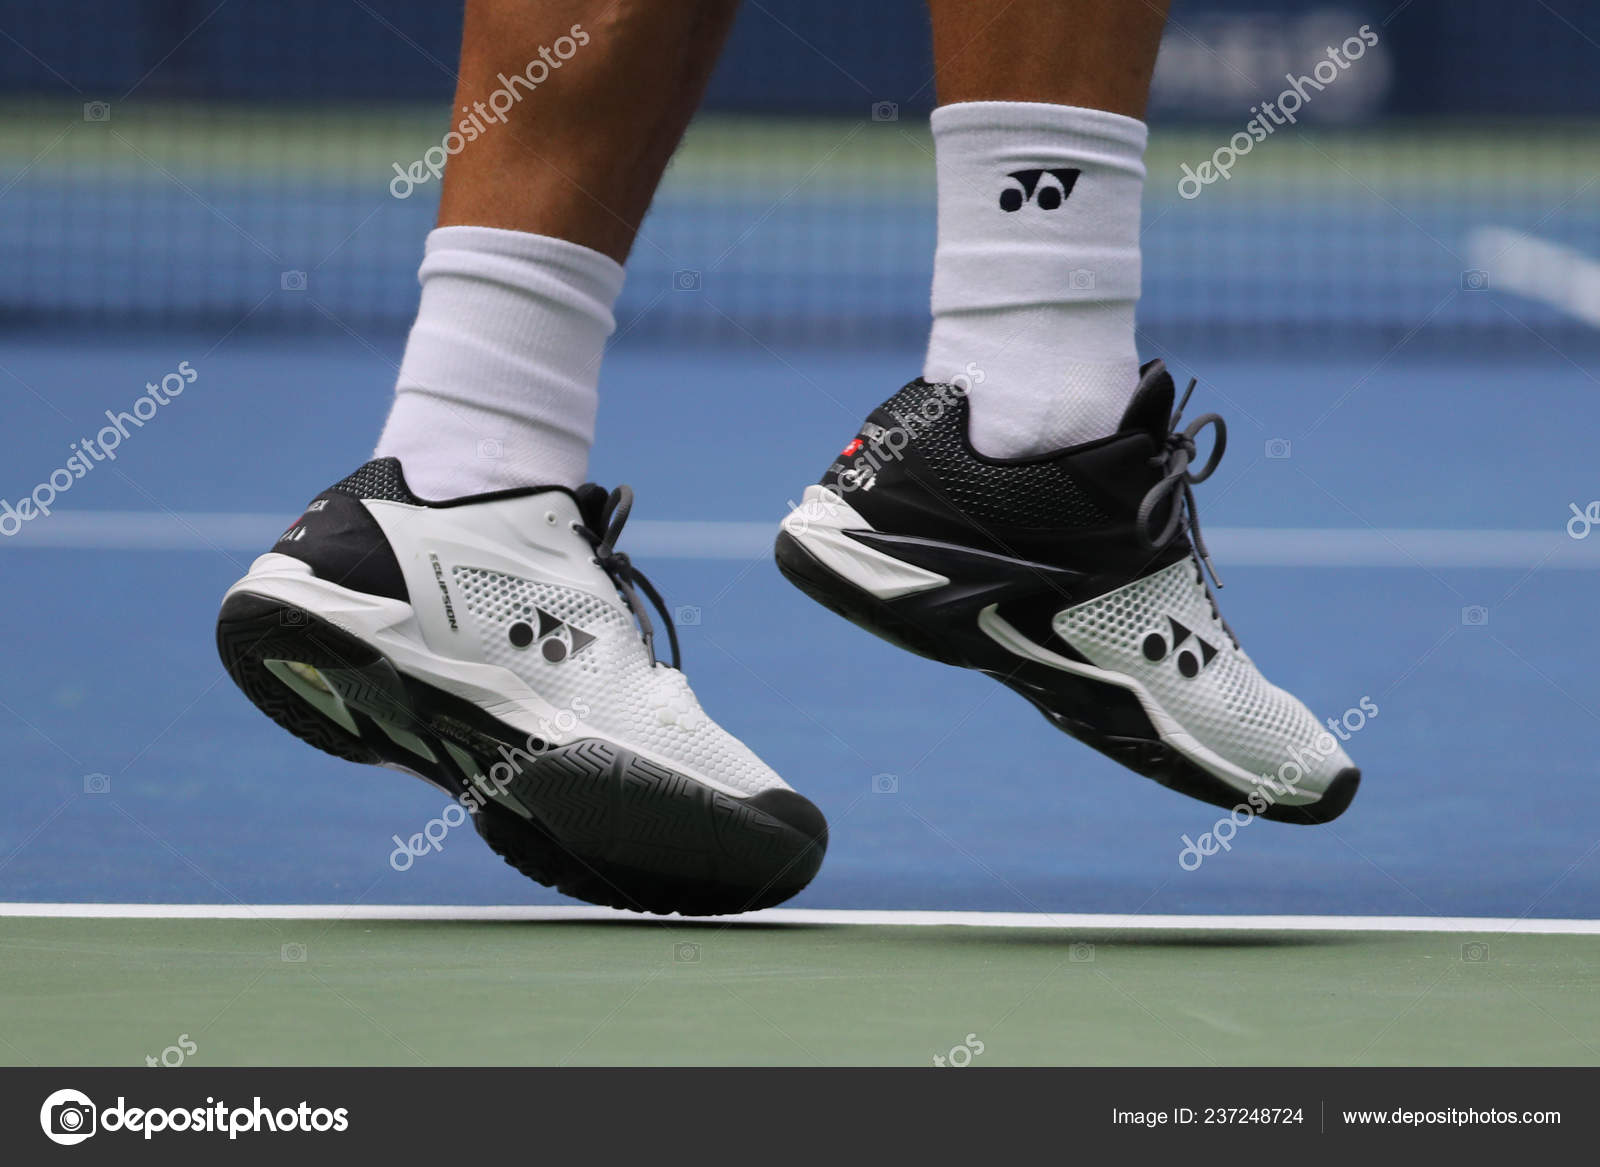 wawrinka tennis shoes